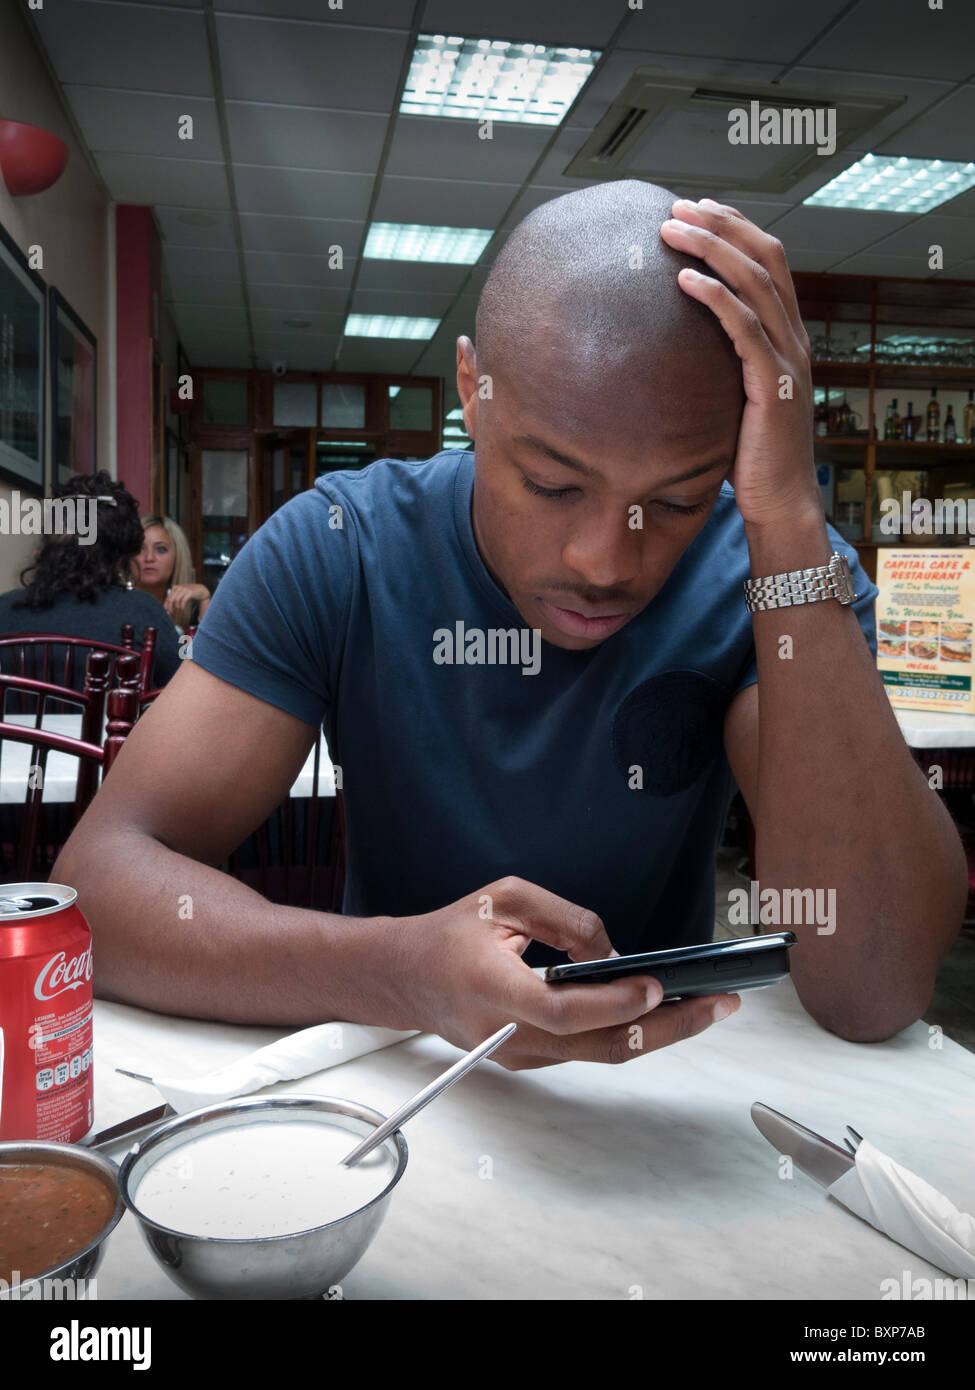 Uomo che utilizza Internet nella sua smart telefono cellulare in un ristorante fast food Foto Stock